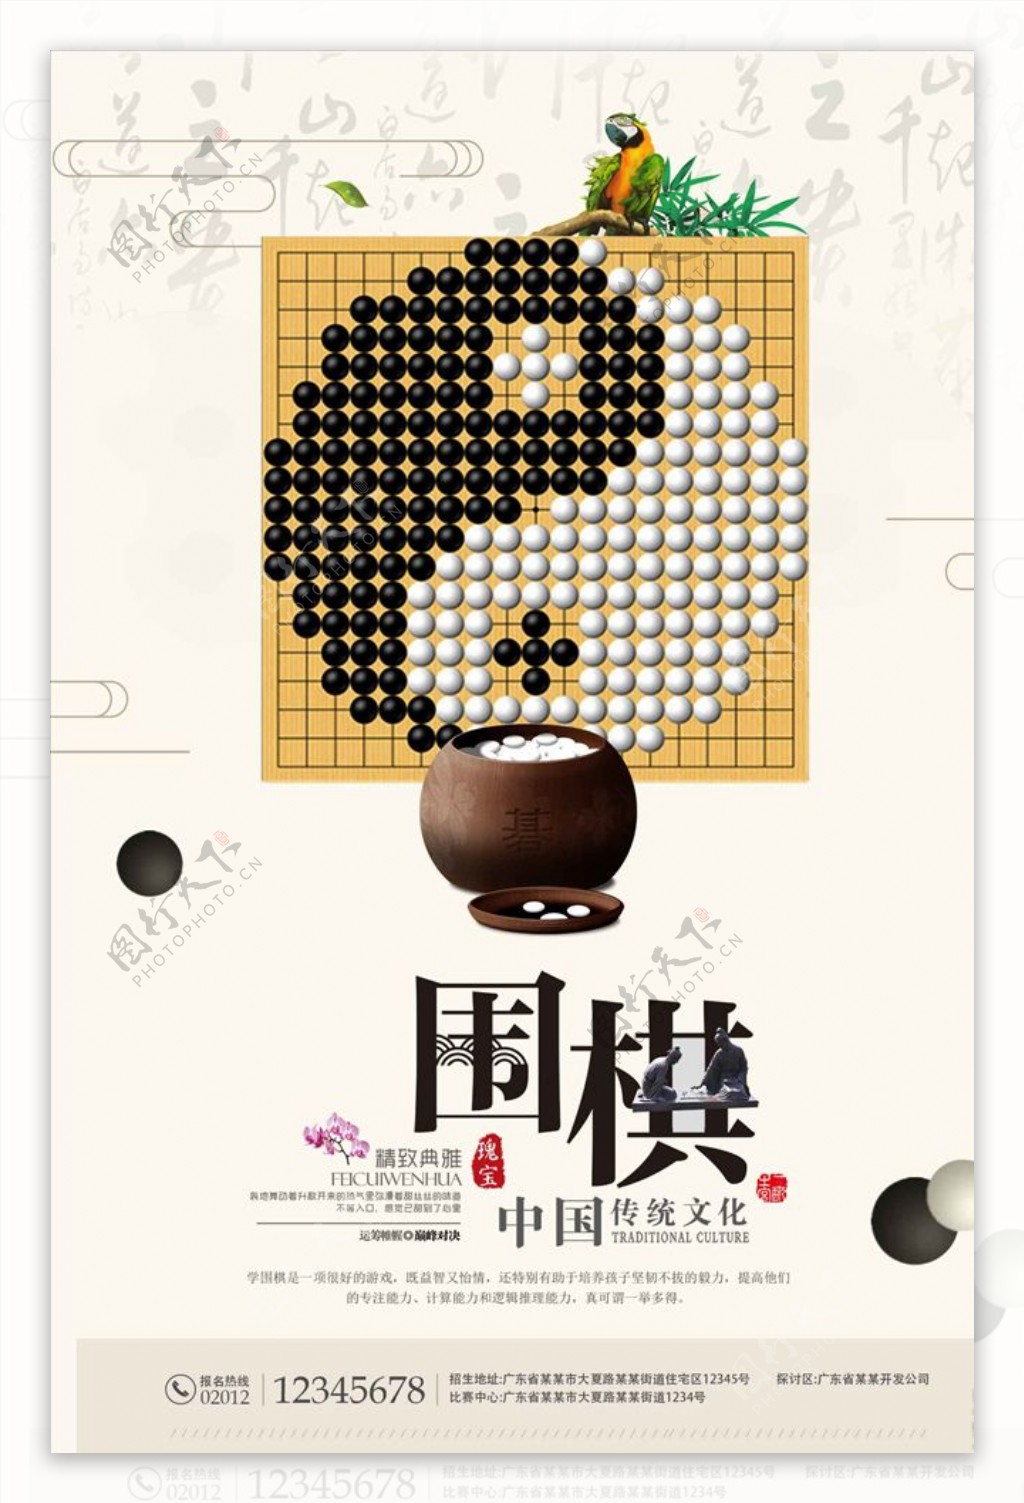 创意大气中国风传统文化围棋